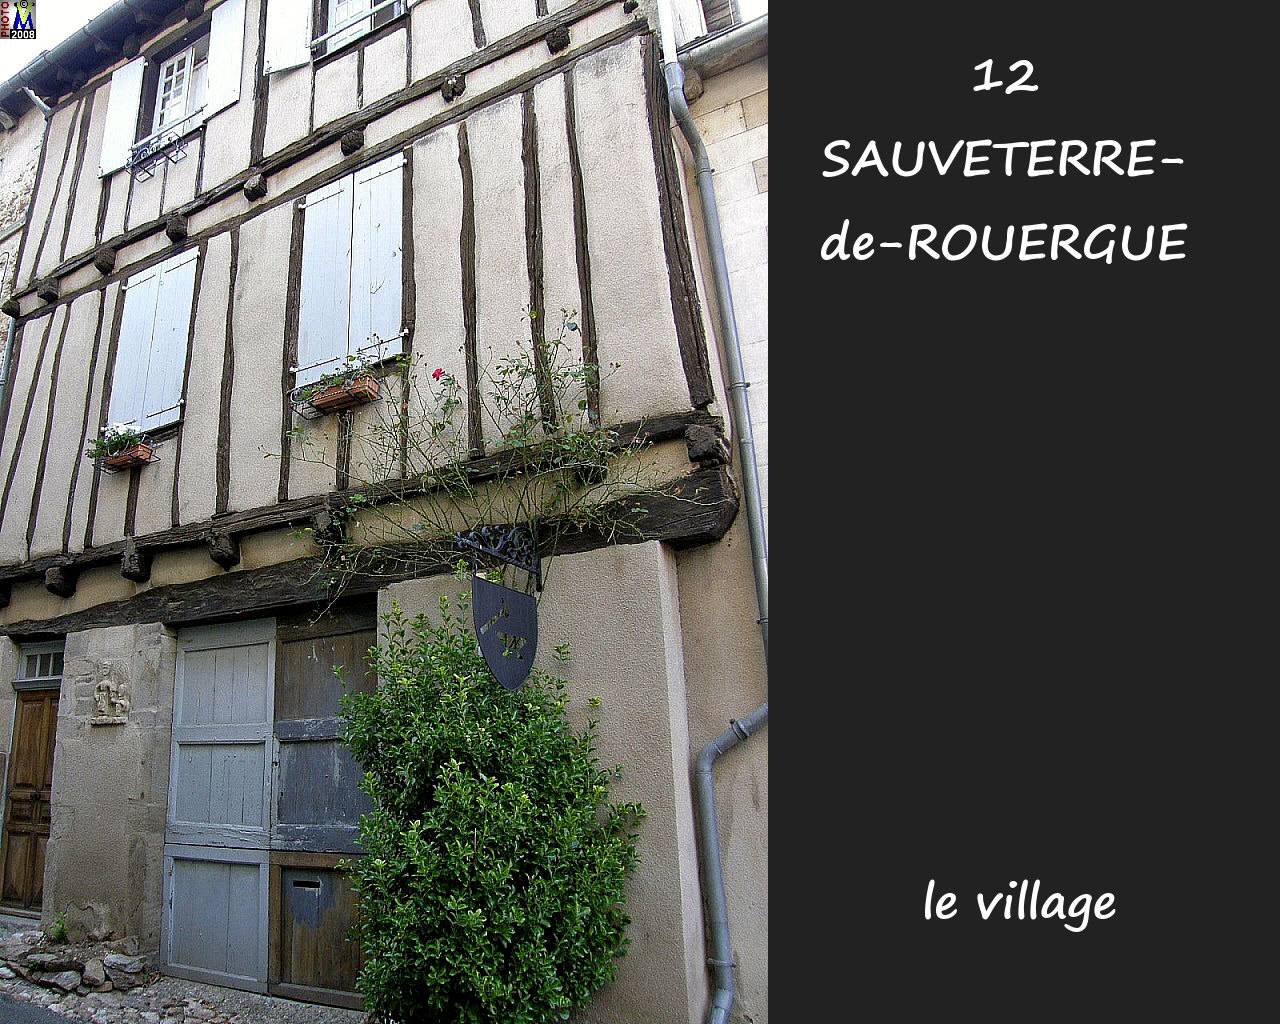 12SAUVETERRE-ROUERGUE_village_126.jpg